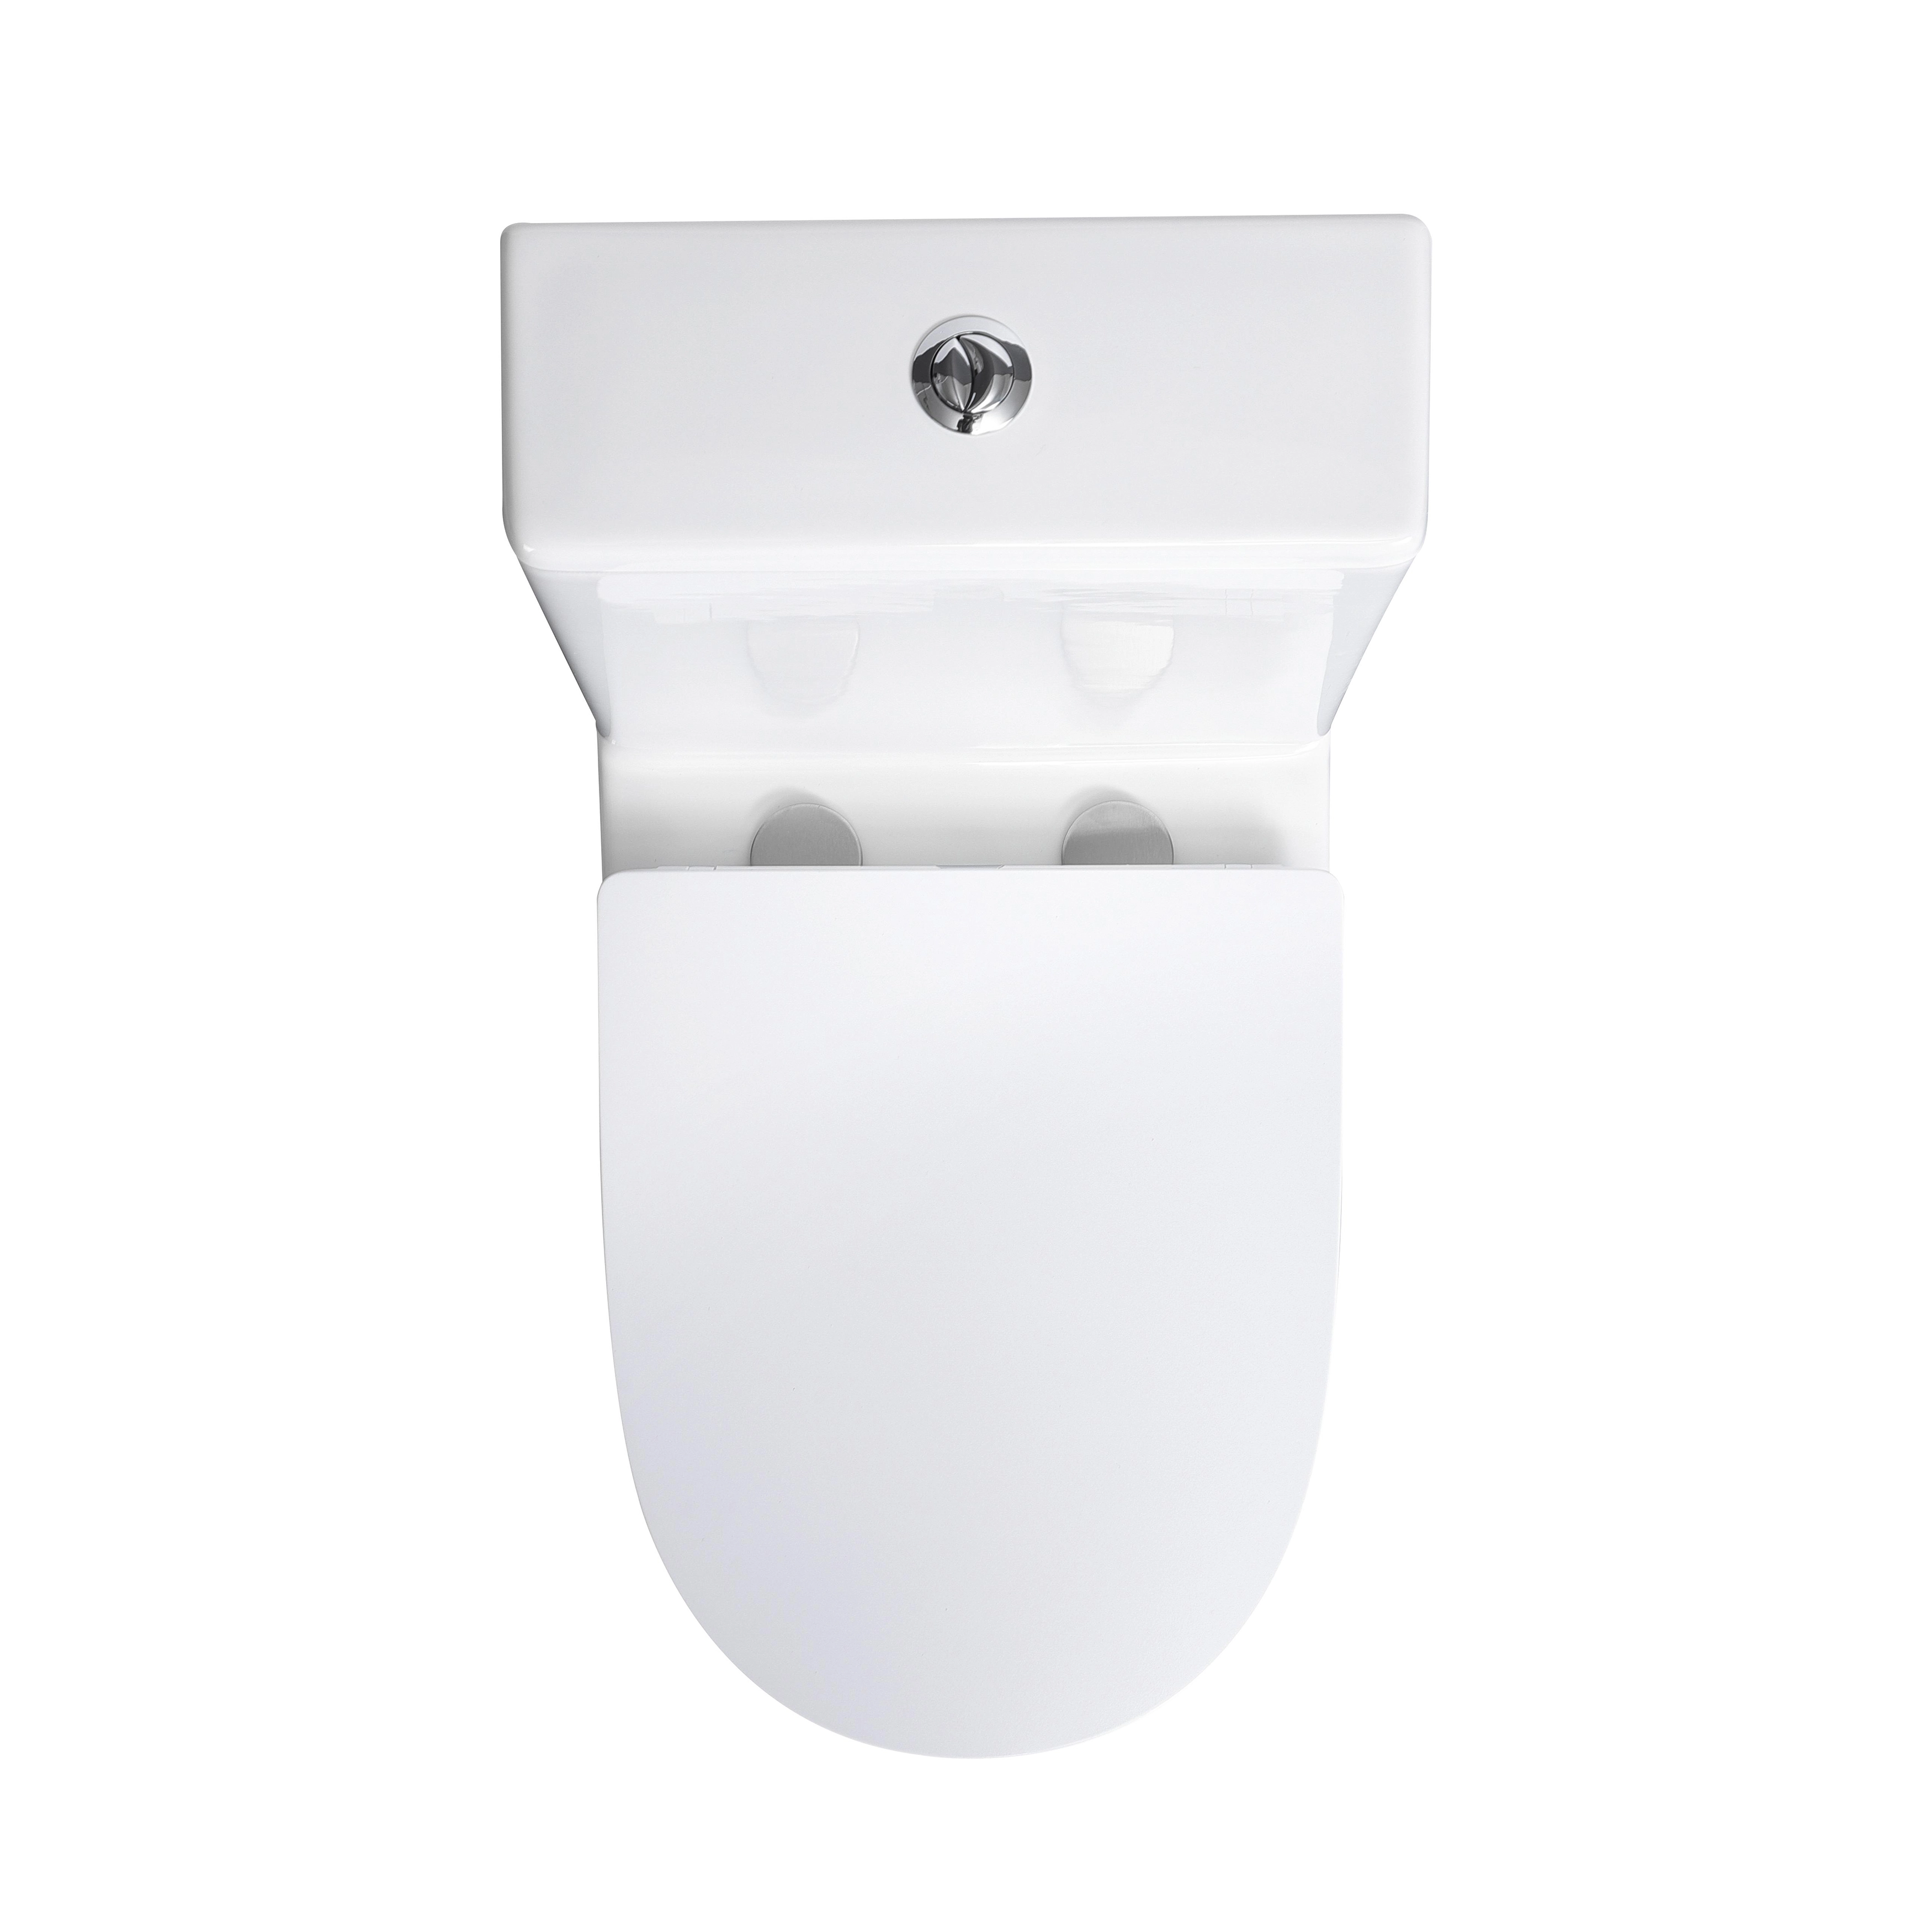 Stand-WC-Set WC-Sitz OBI Spülkasten Verosan+ inkl. und spülrandlos Weiß Paros kaufen bei